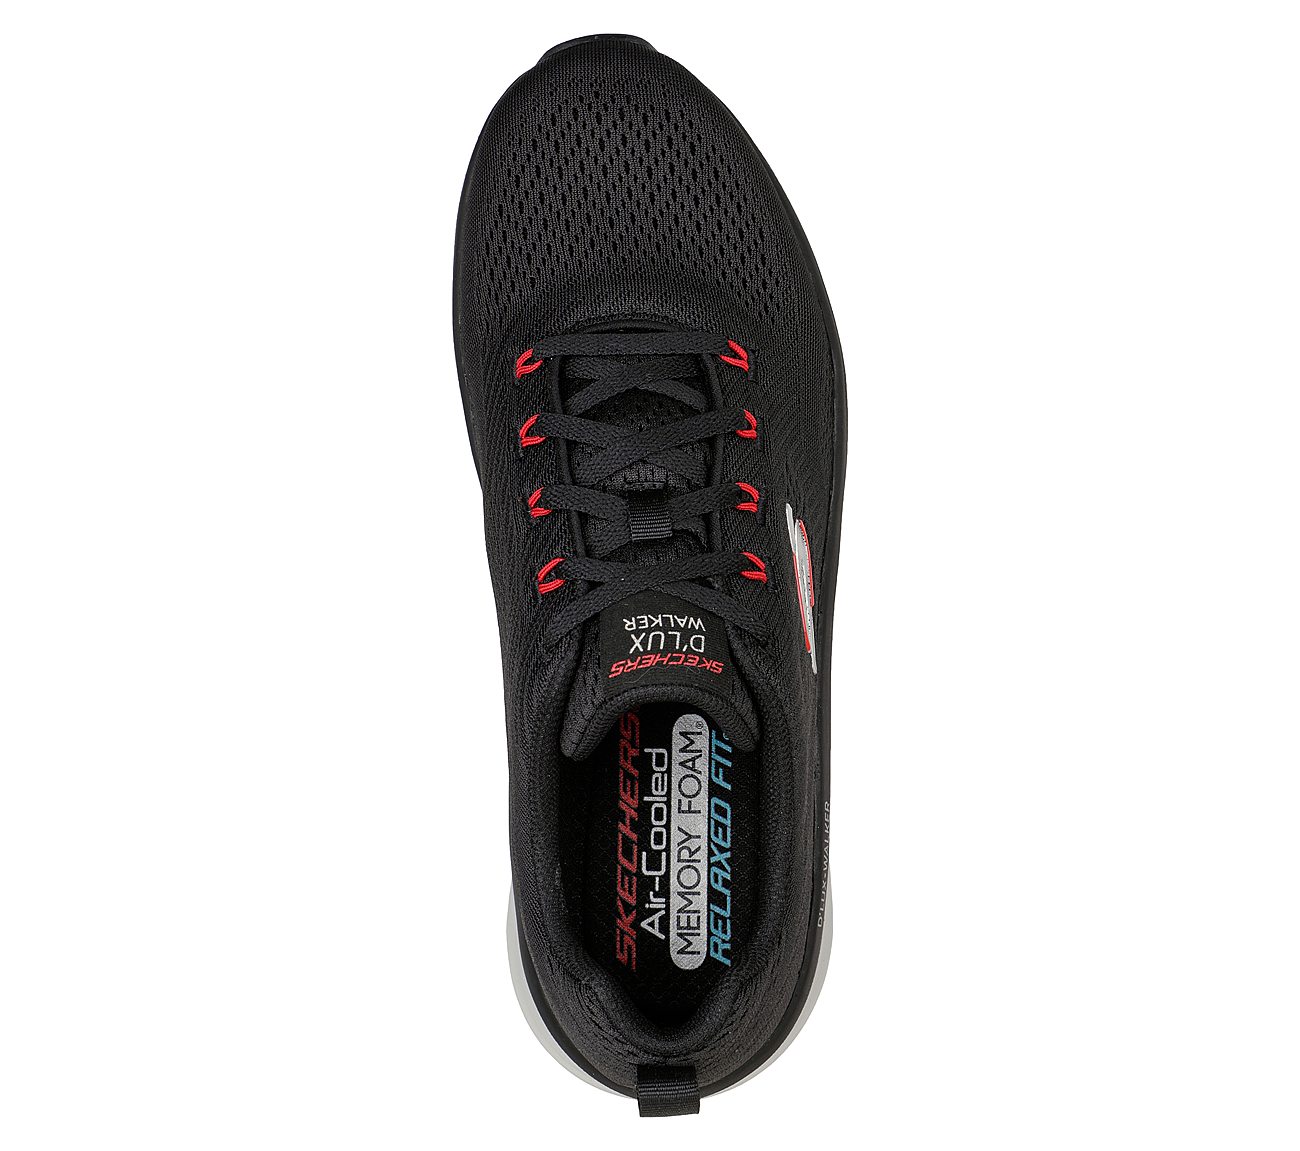 D'LUX WALKER - MEERNO, BLACK/RED Footwear Top View